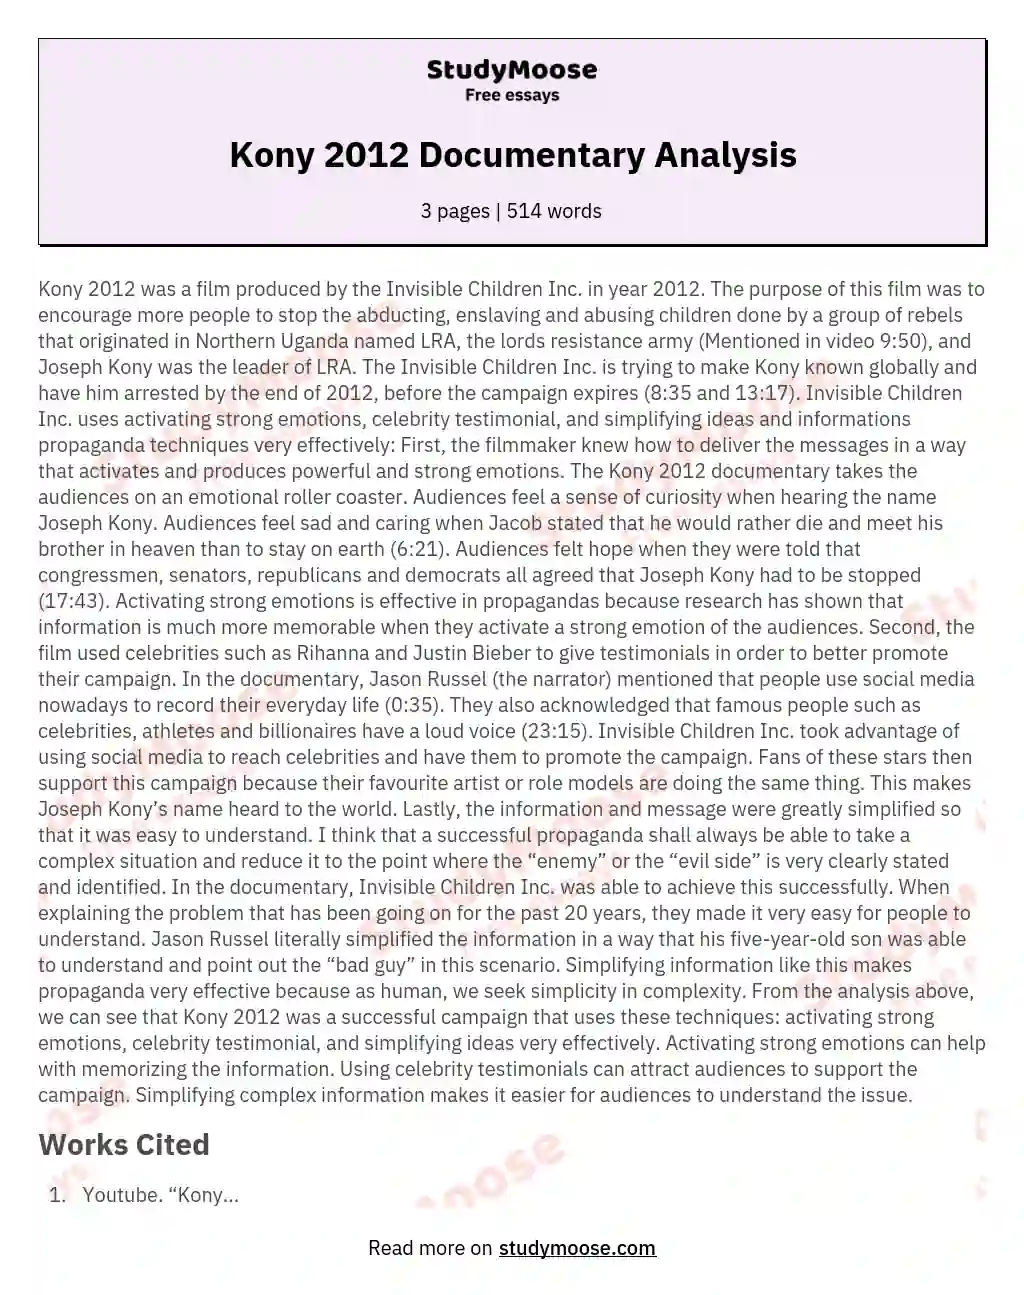 Kony 2012 Documentary Analysis essay